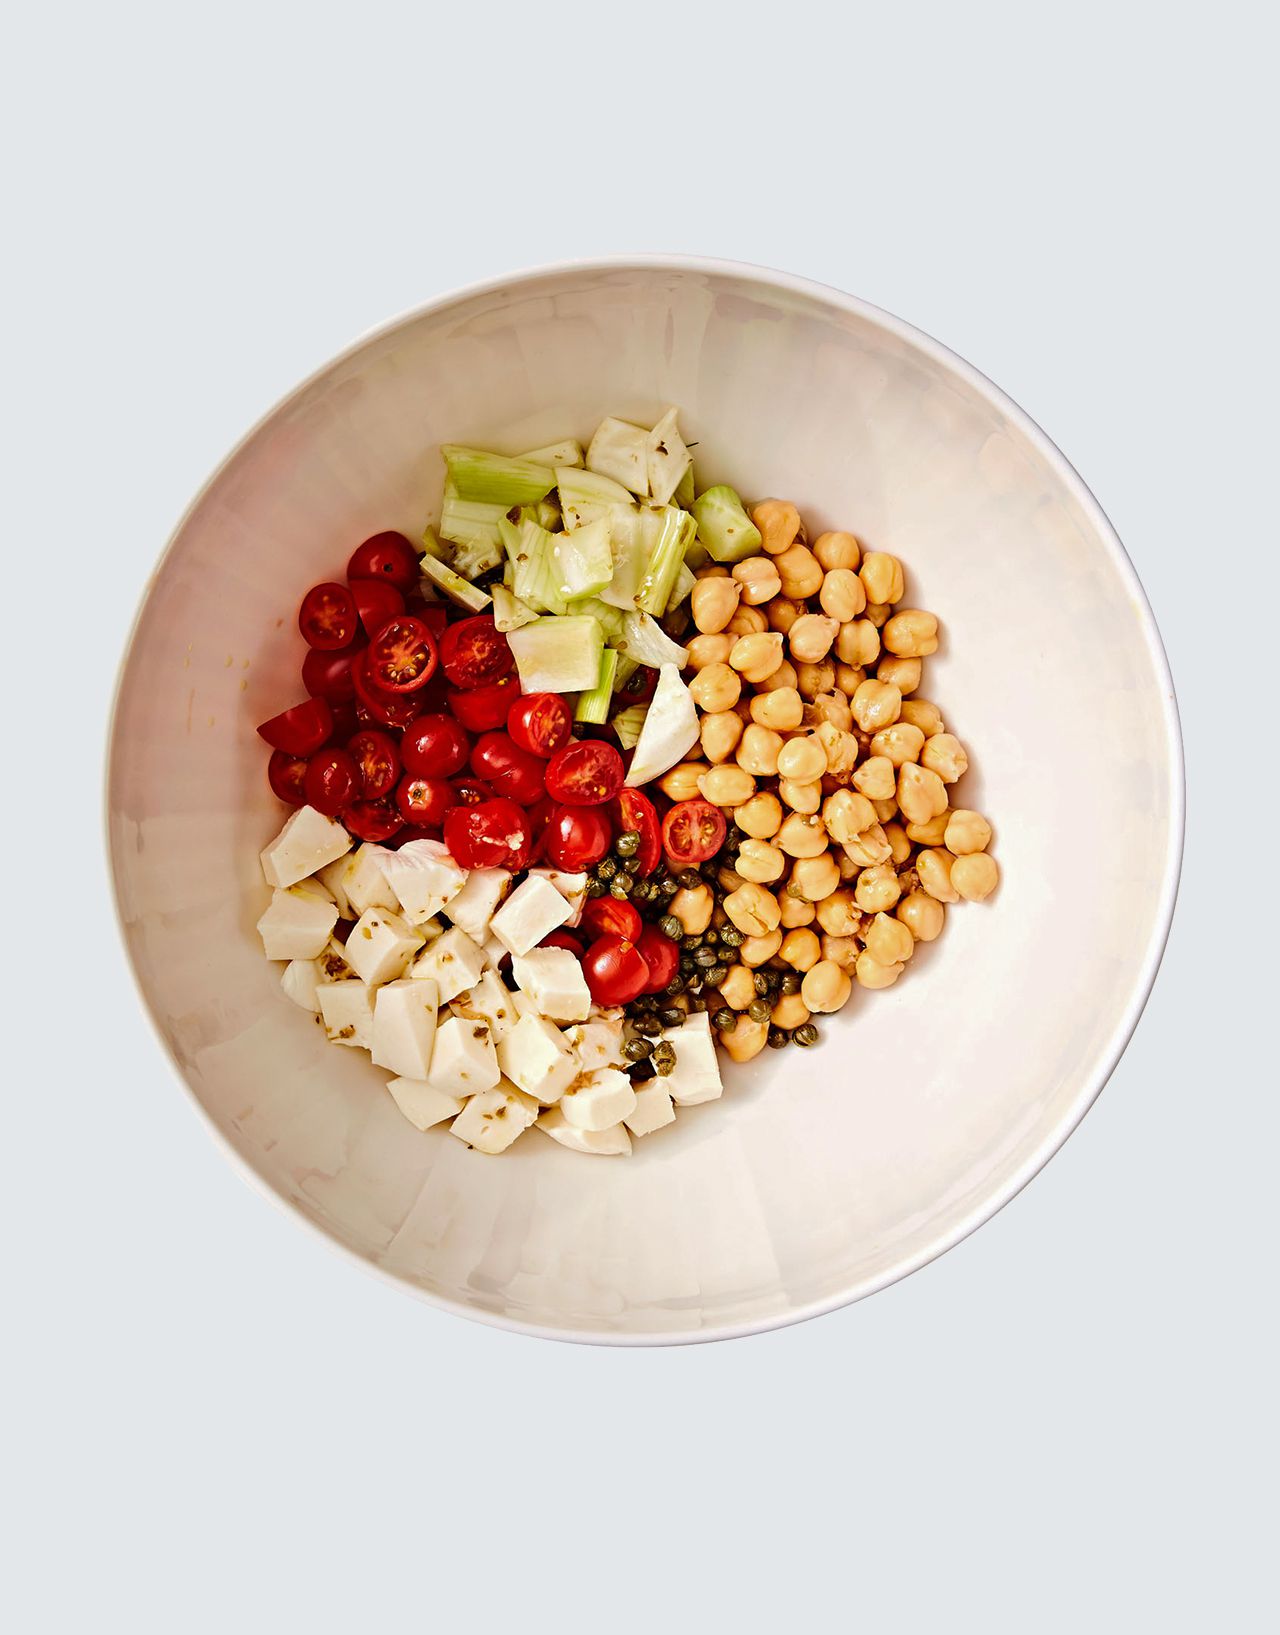 pasta salad ingredients in white bowl